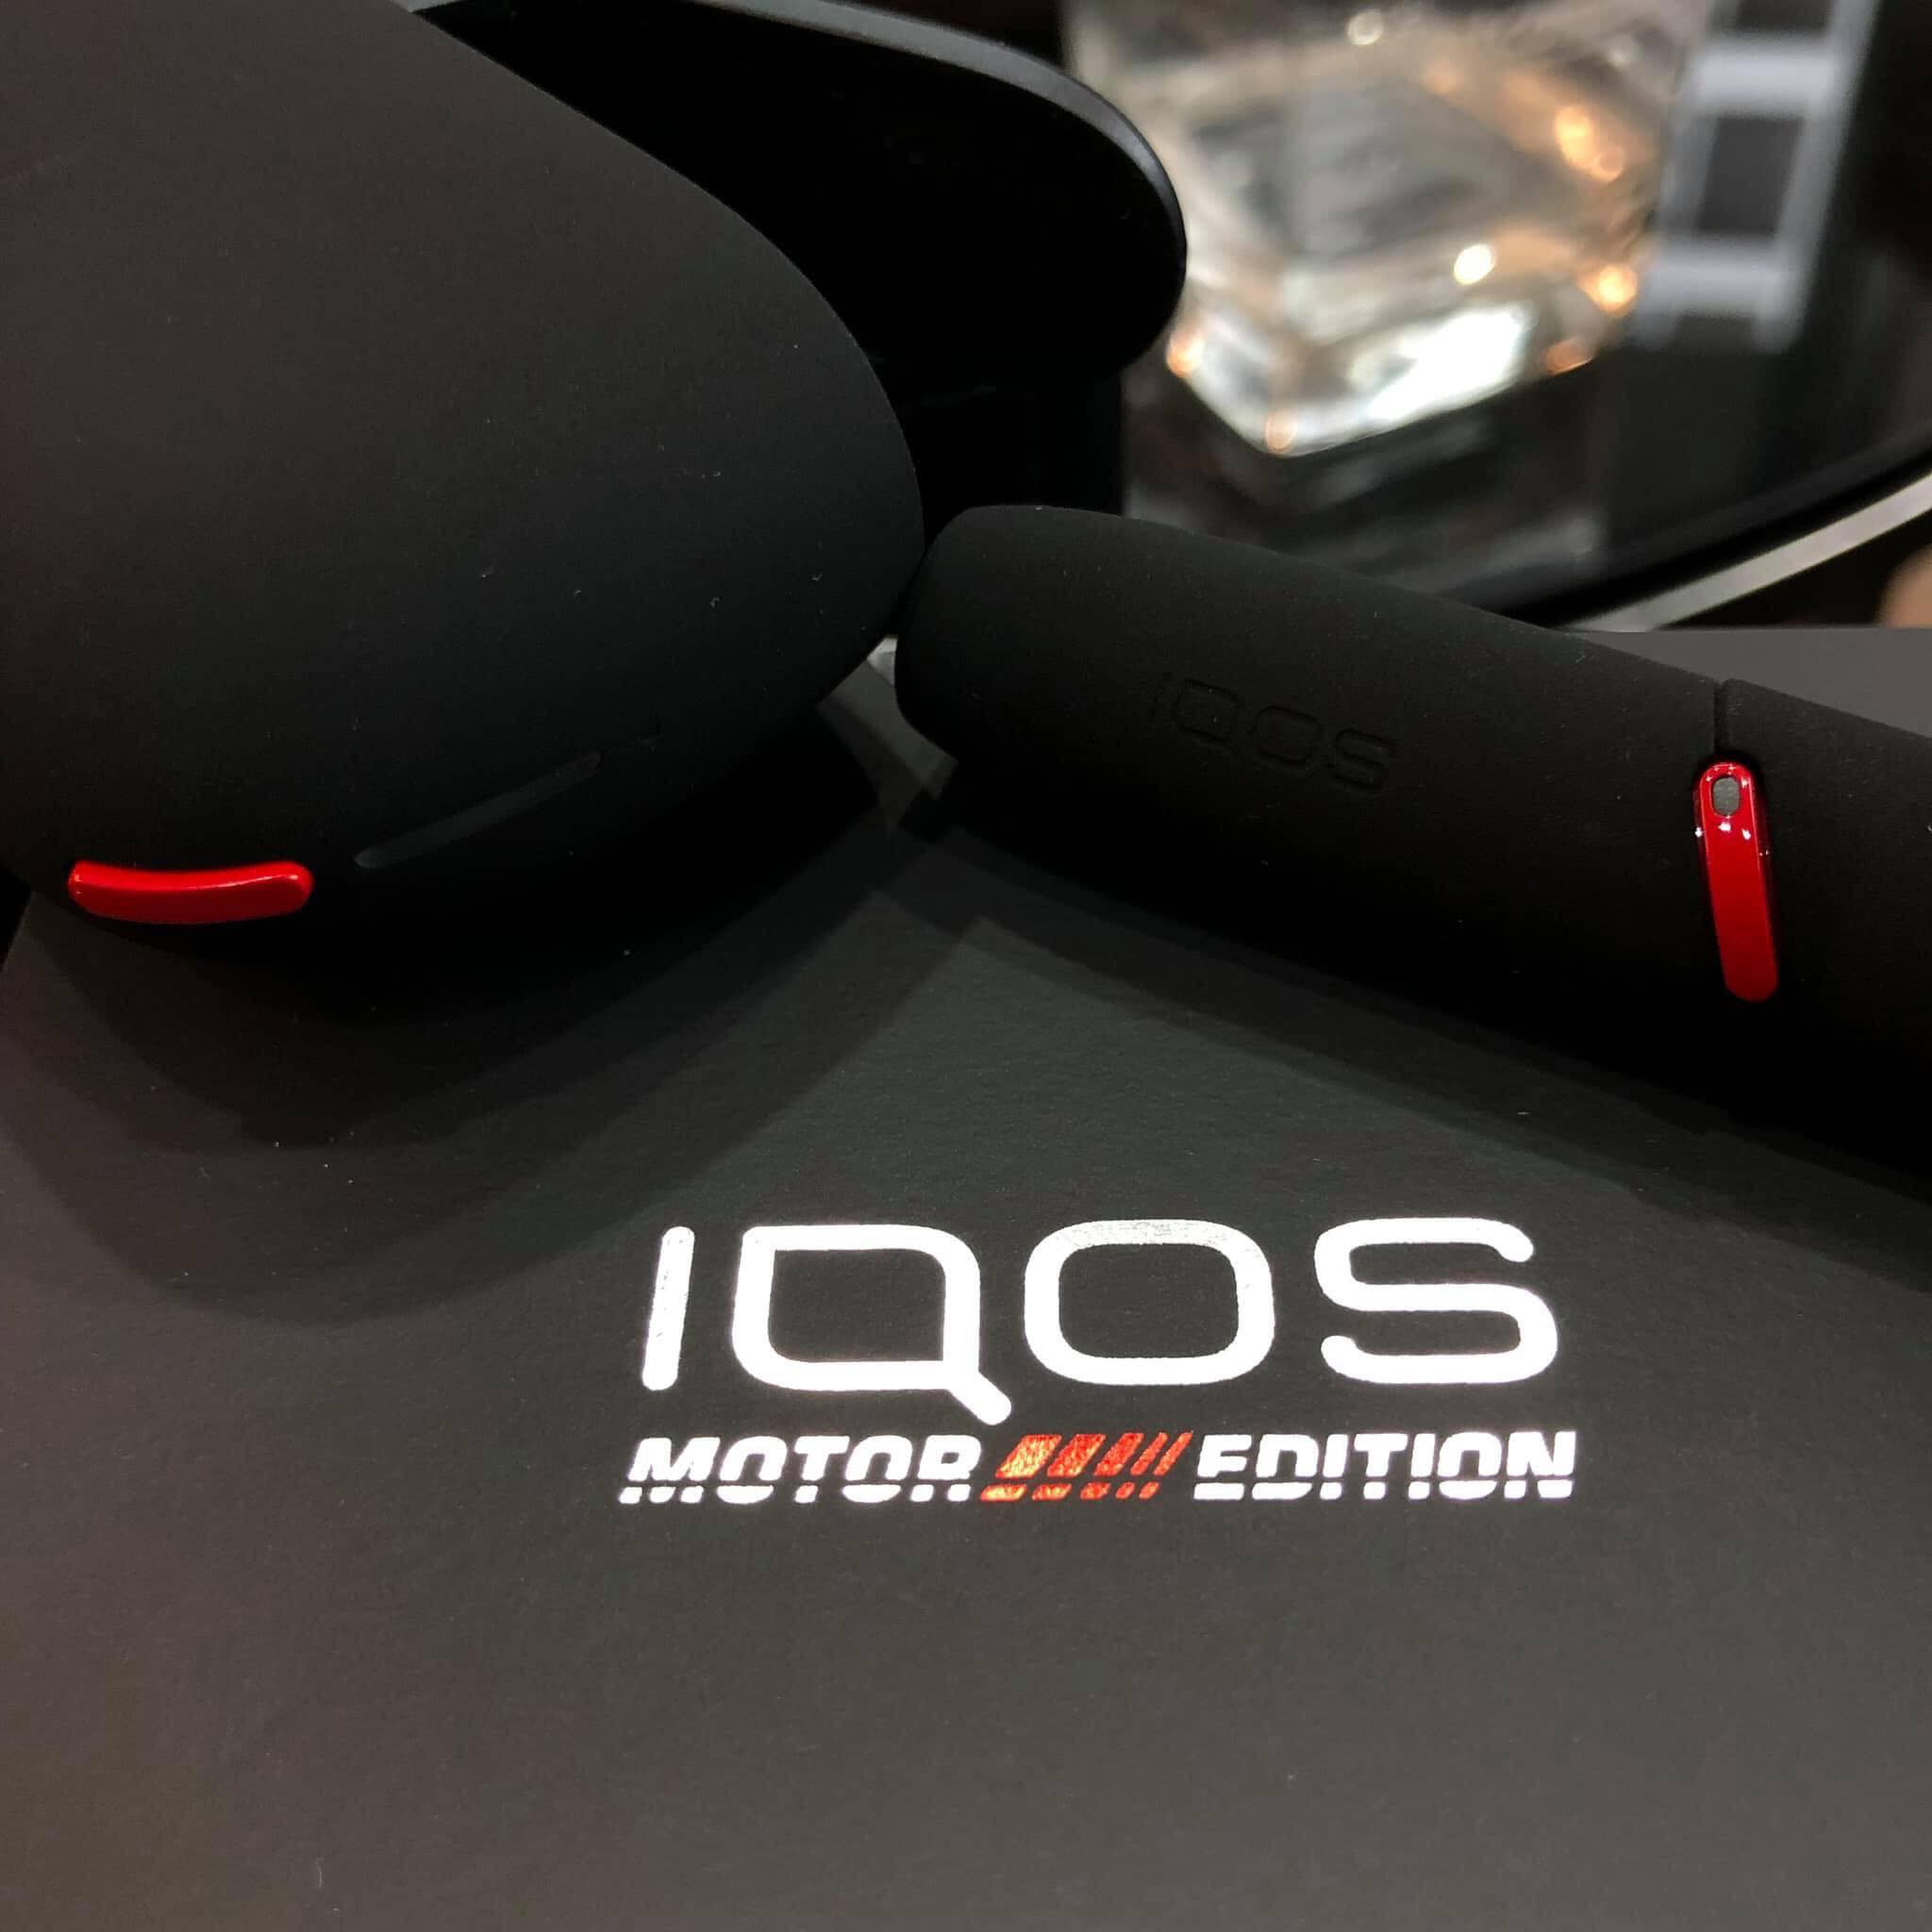 iQOS 3.0 Motor Edition